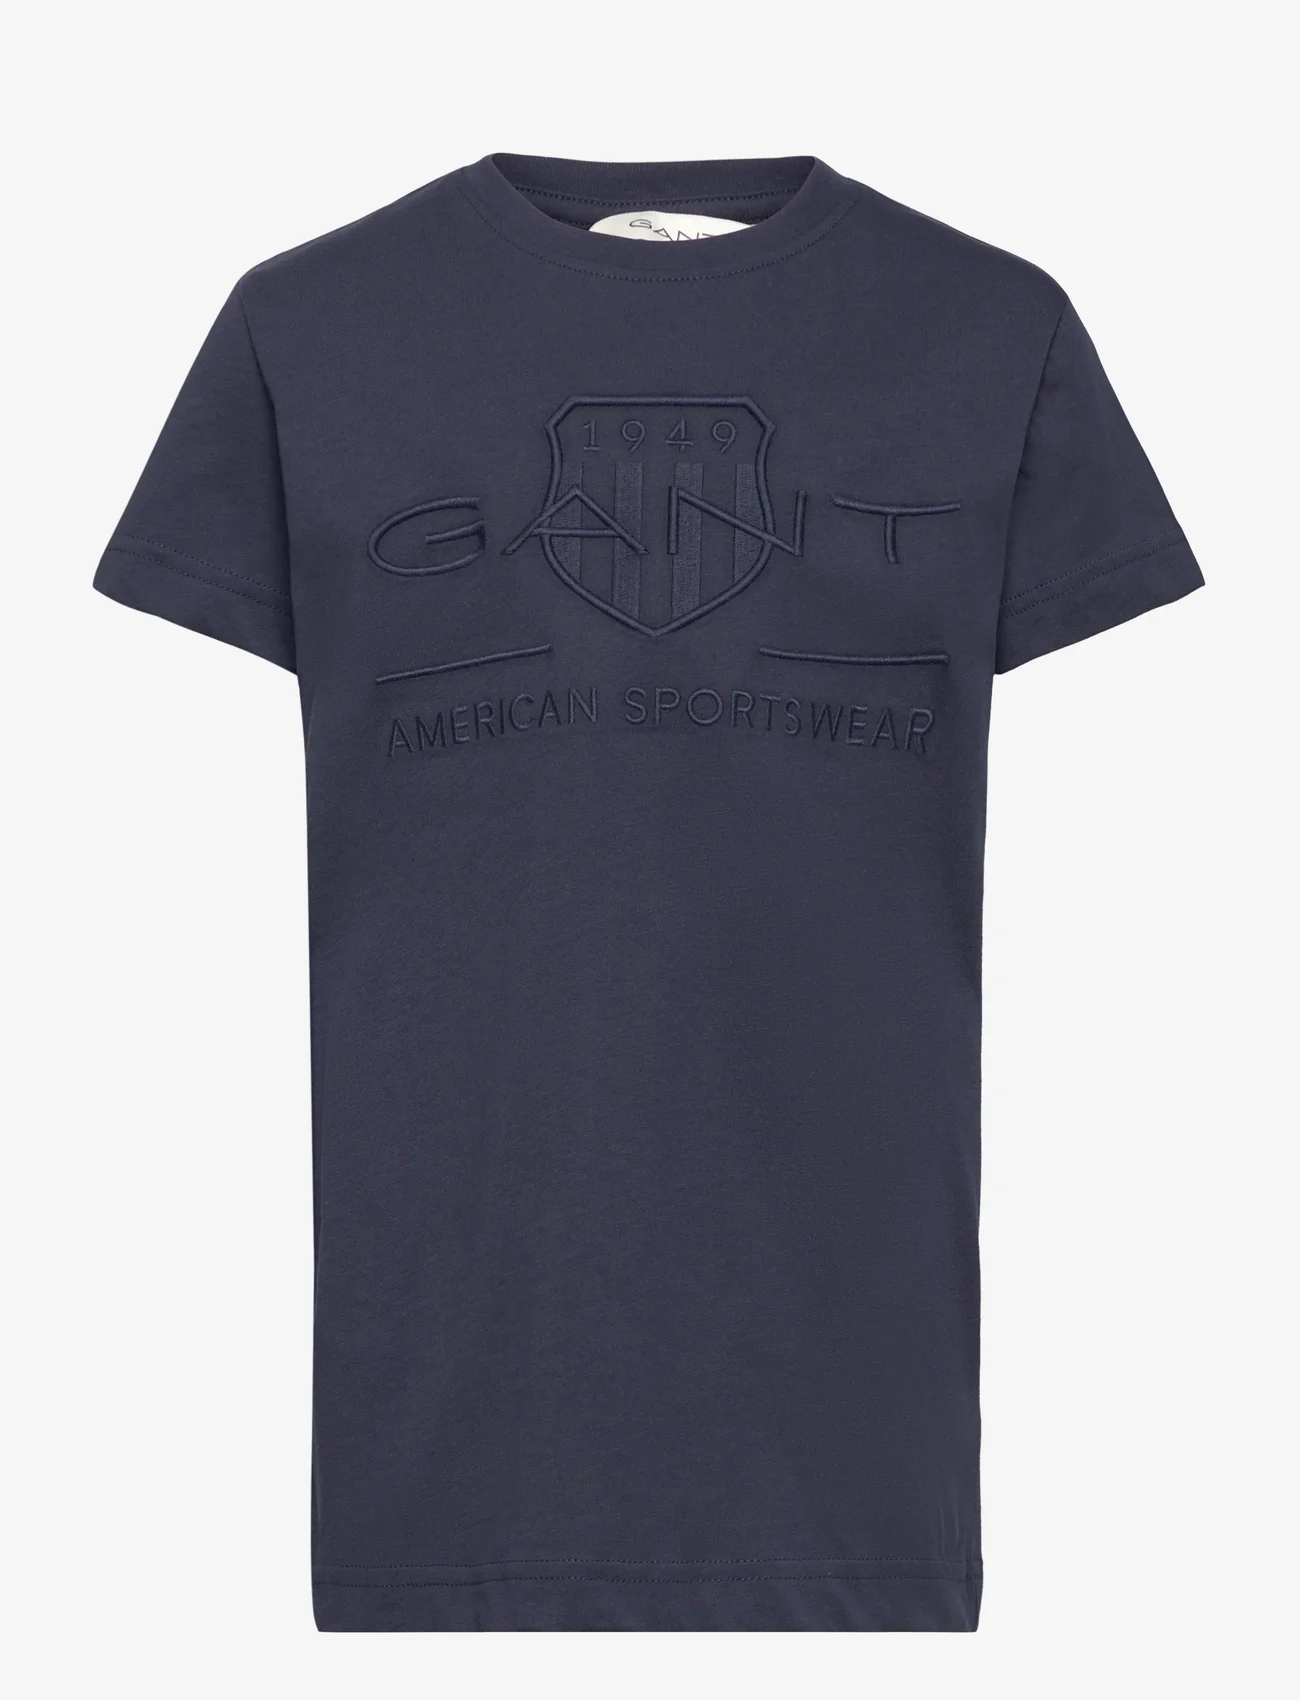 GANT - TONAL AS SS T-SHIRT - kortärmade t-shirts - evening blue - 0